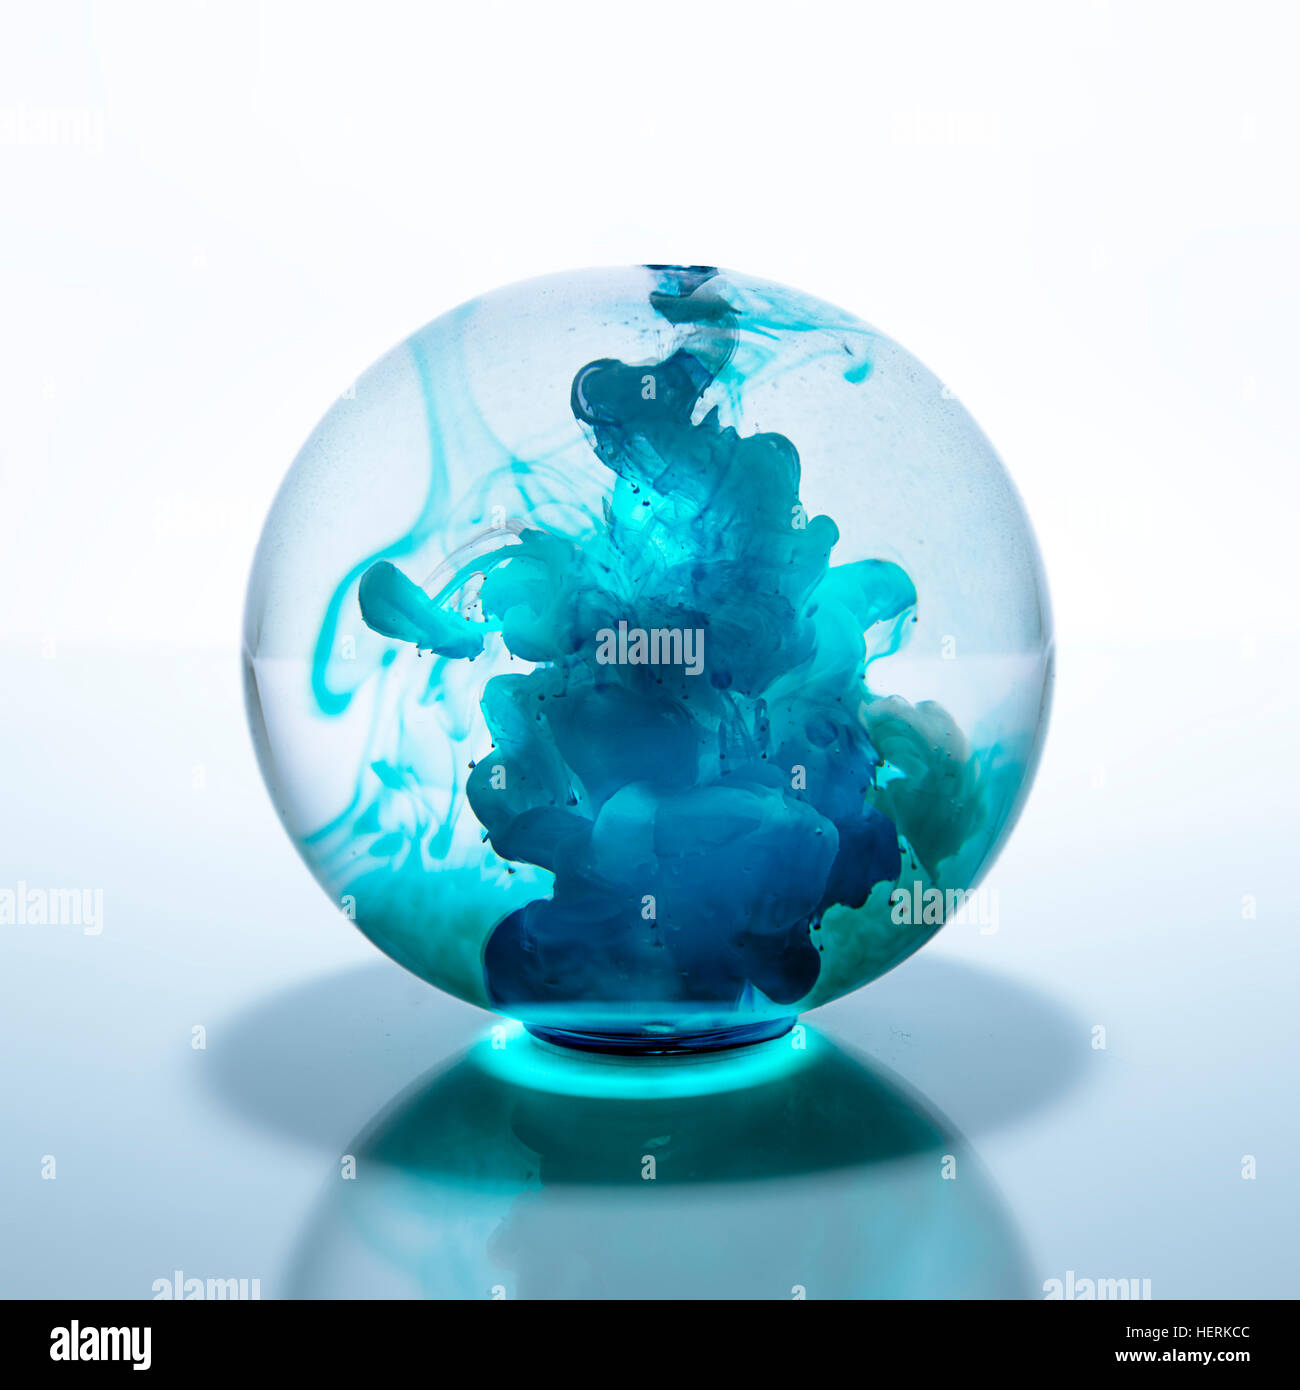 Kristallkugel mit blauer Aquarellfarbe in Wasser gefüllt Stockfoto